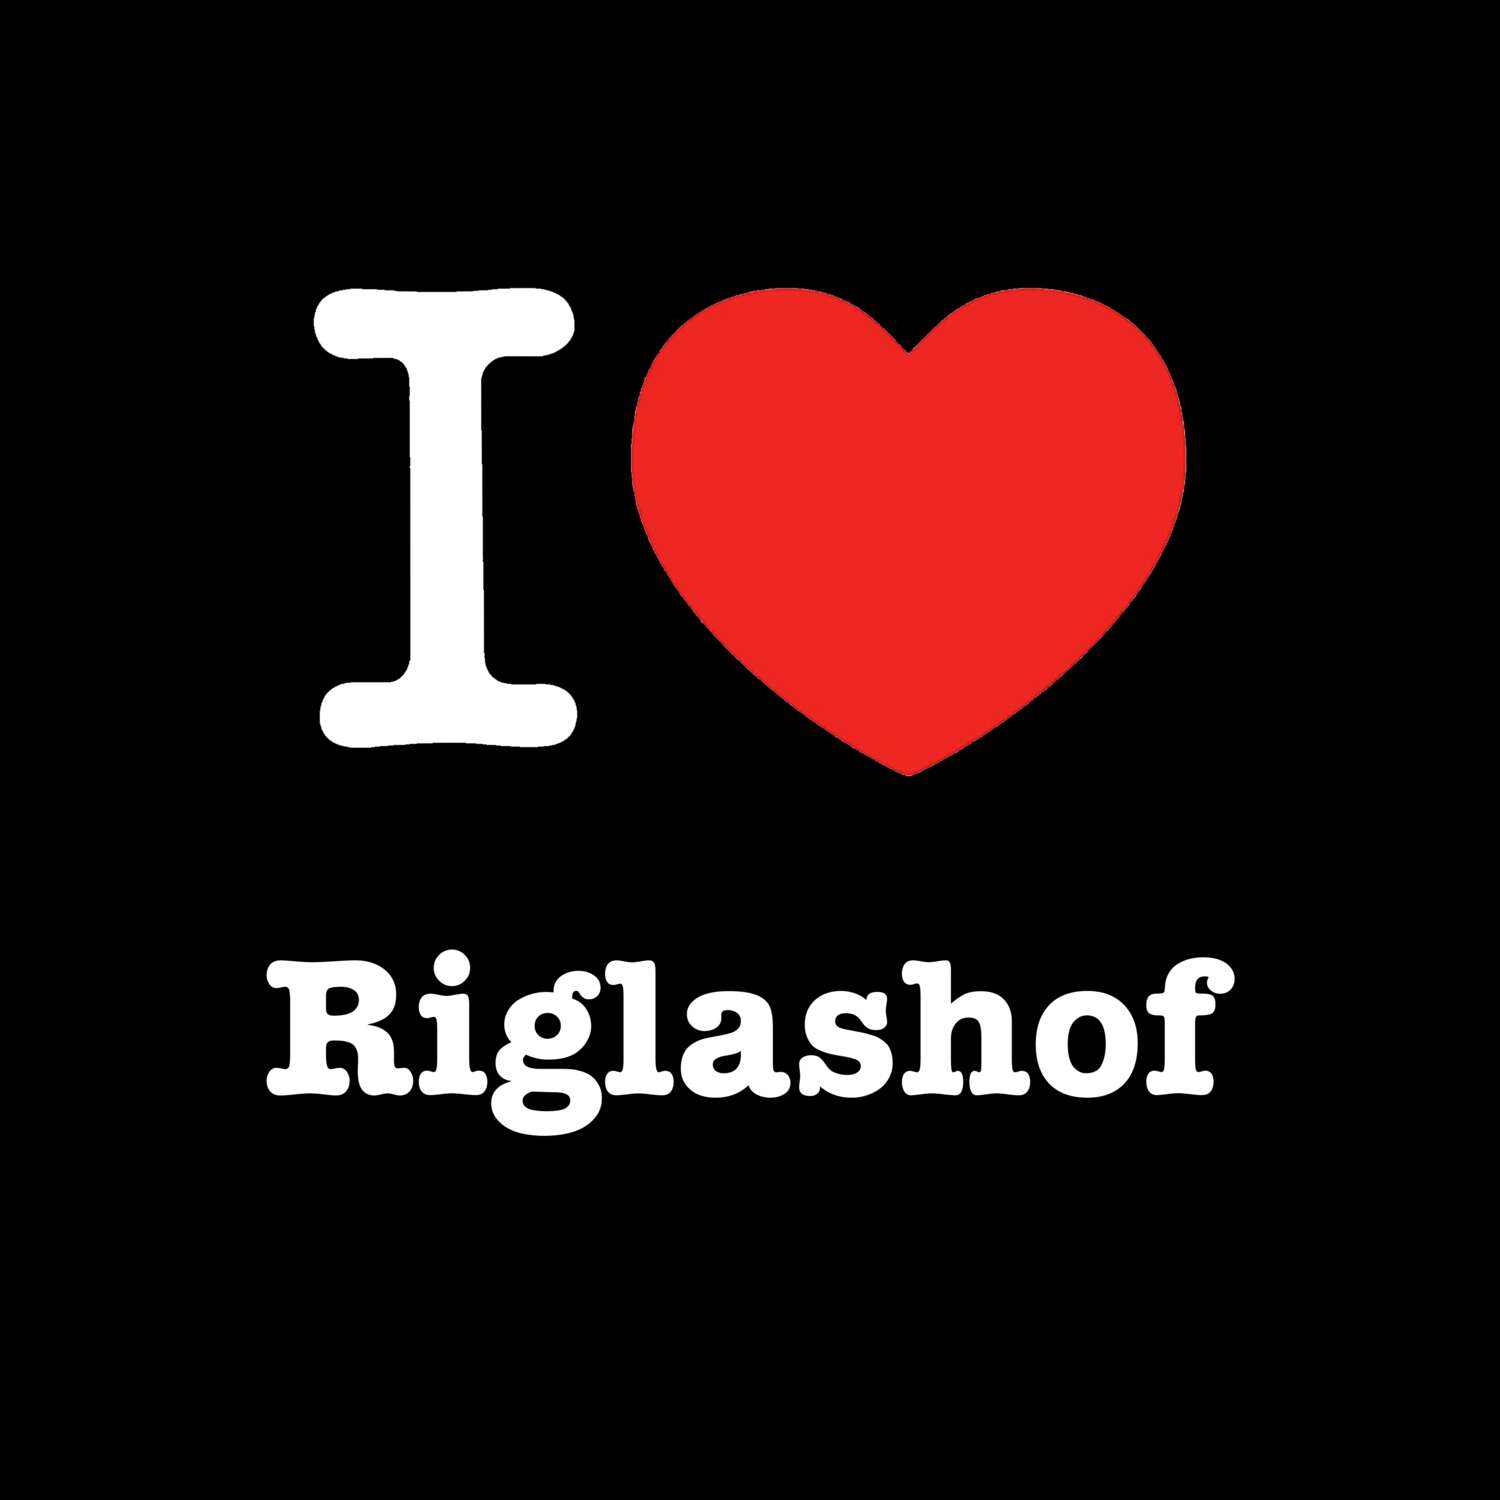 Riglashof T-Shirt »I love«